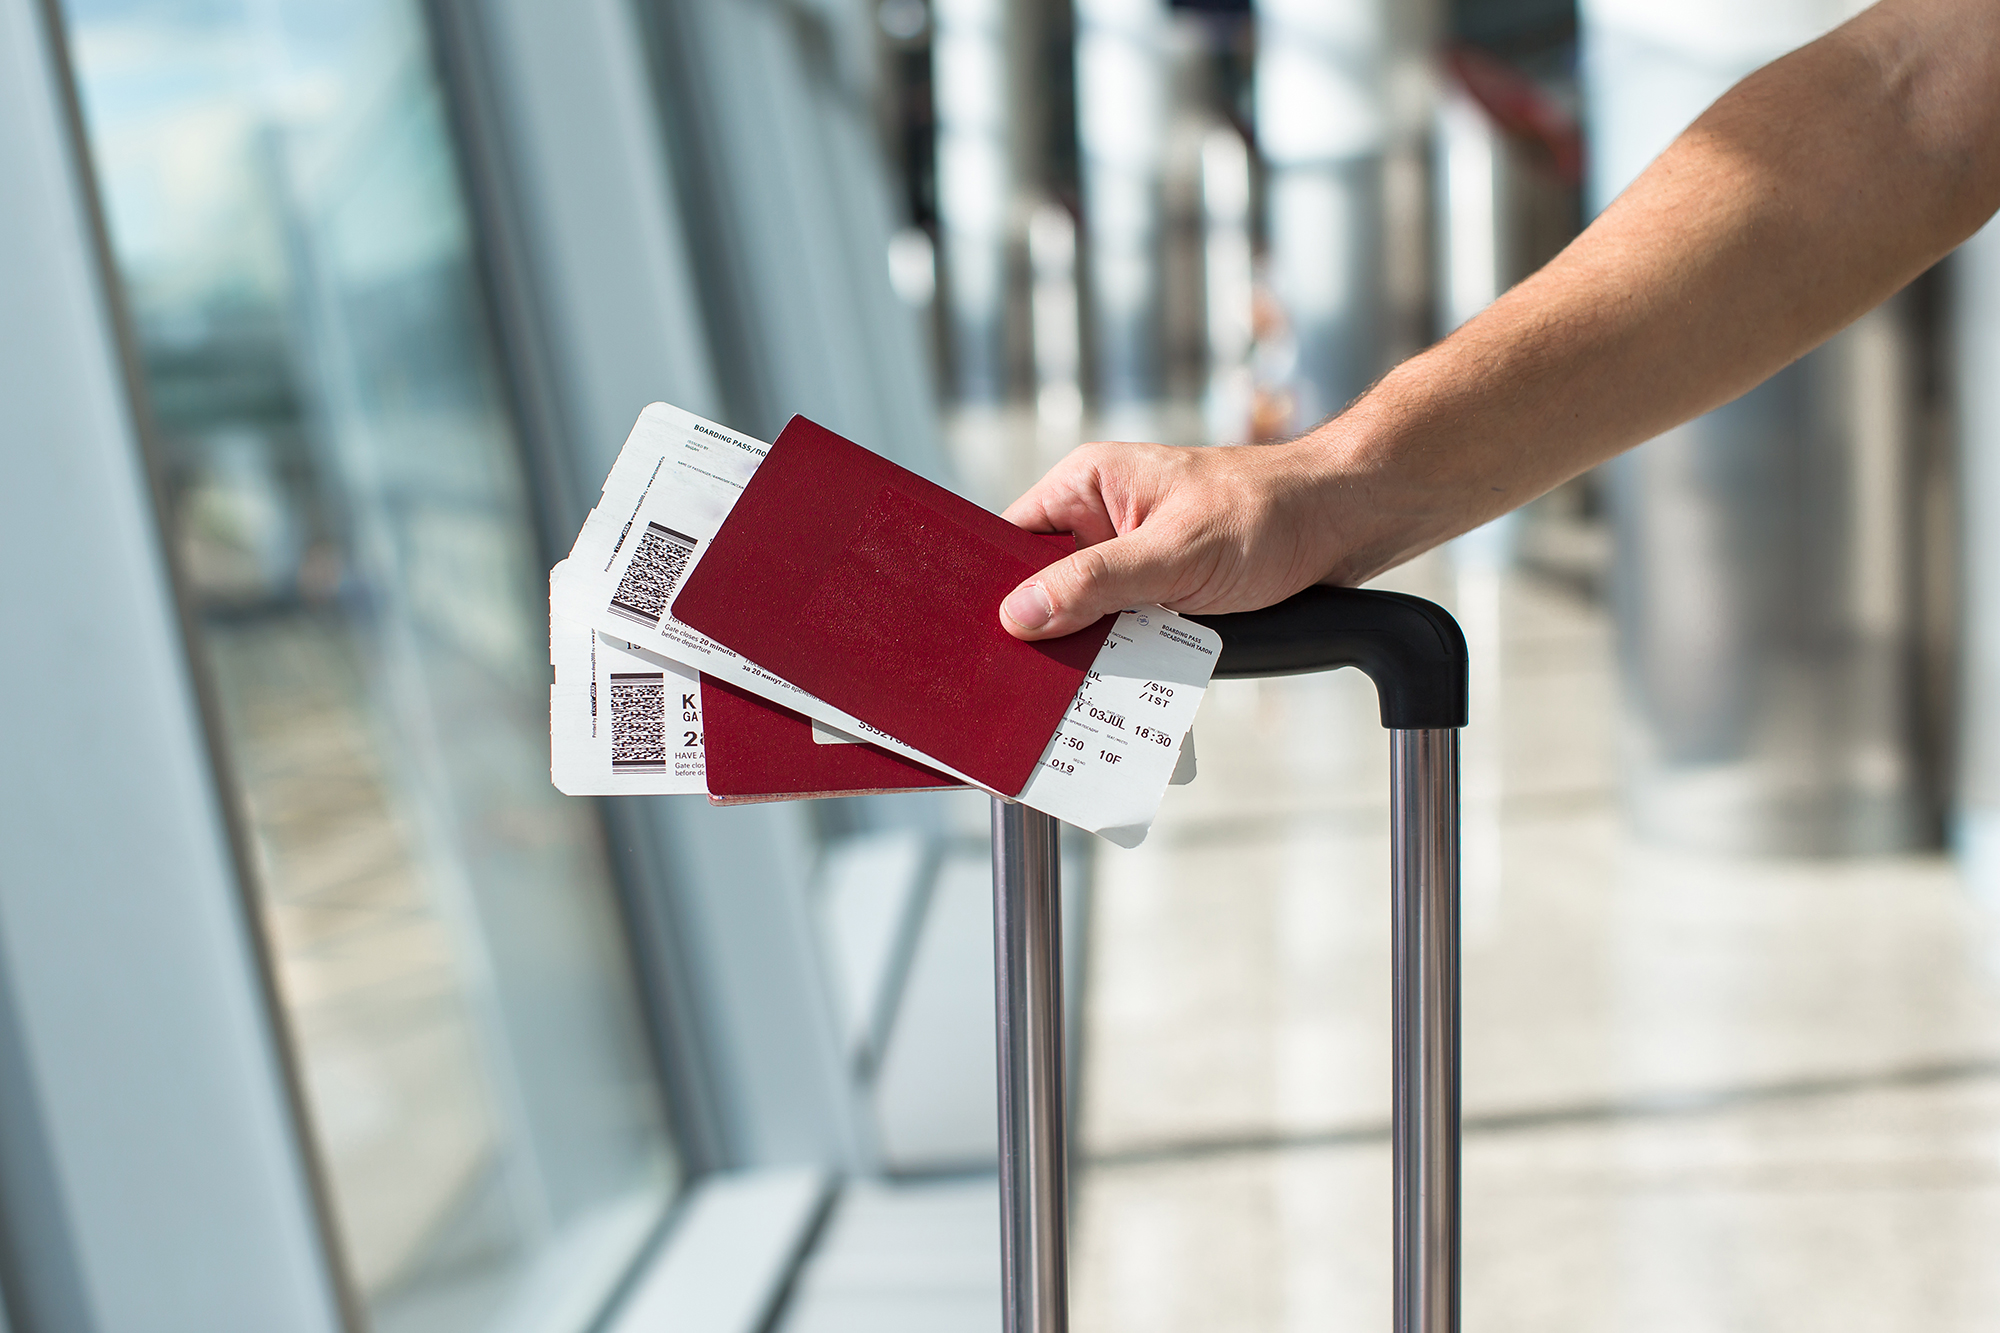 Flight tickets. (Image: Shutterstock)